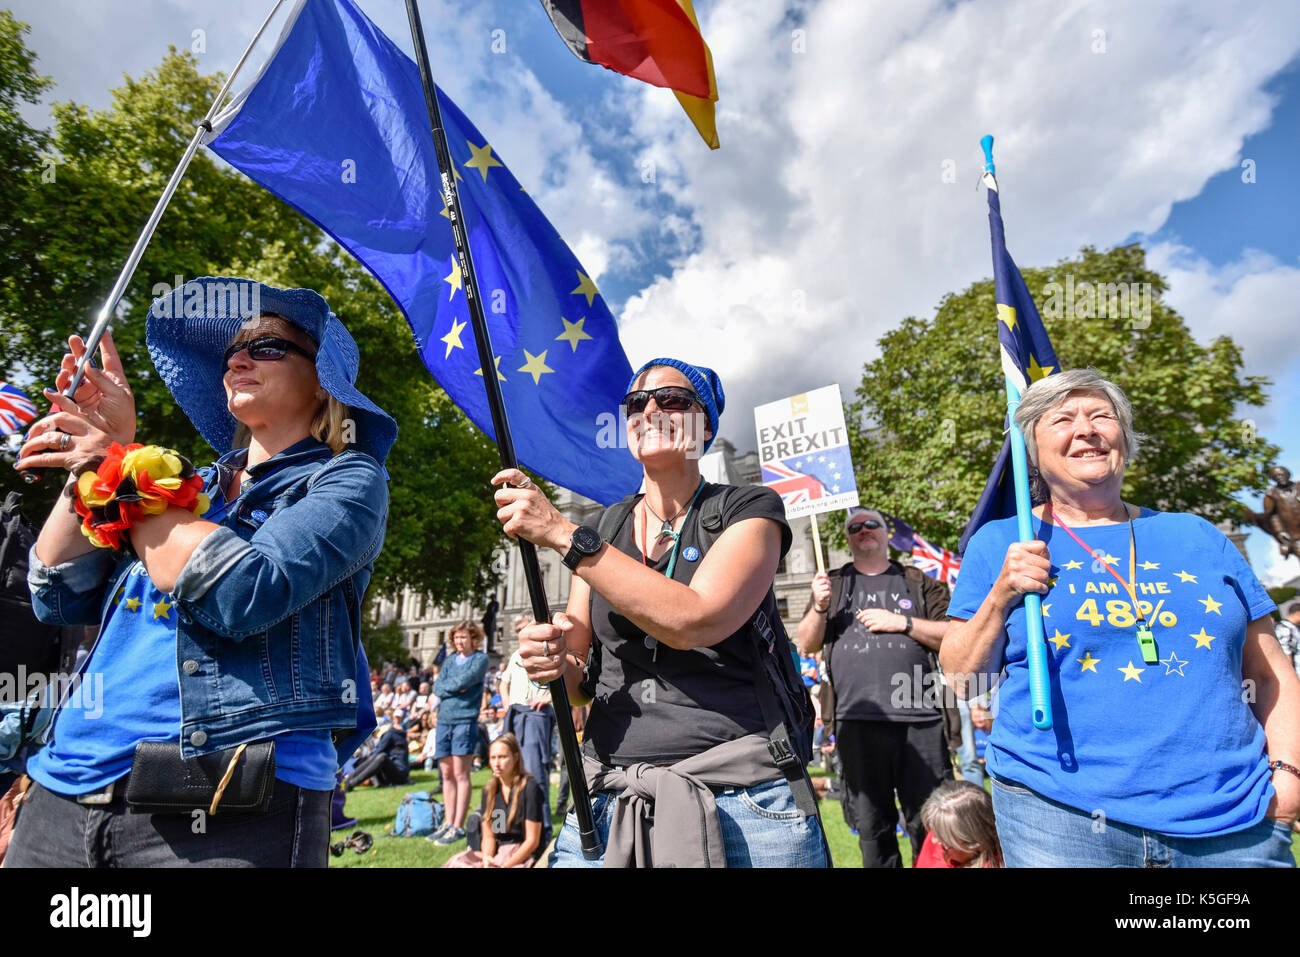 Londres, Royaume-Uni. 9 septembre 2017. Anti-Brexit manifestants agitent des drapeaux et bannières au cours d'une marche pour l'Europe rassemblement à la place du Parlement faisant campagne pour le renouvellement de l'adhésion de l'Union européenne. Crédit : Stephen Chung / Alamy Live News Banque D'Images